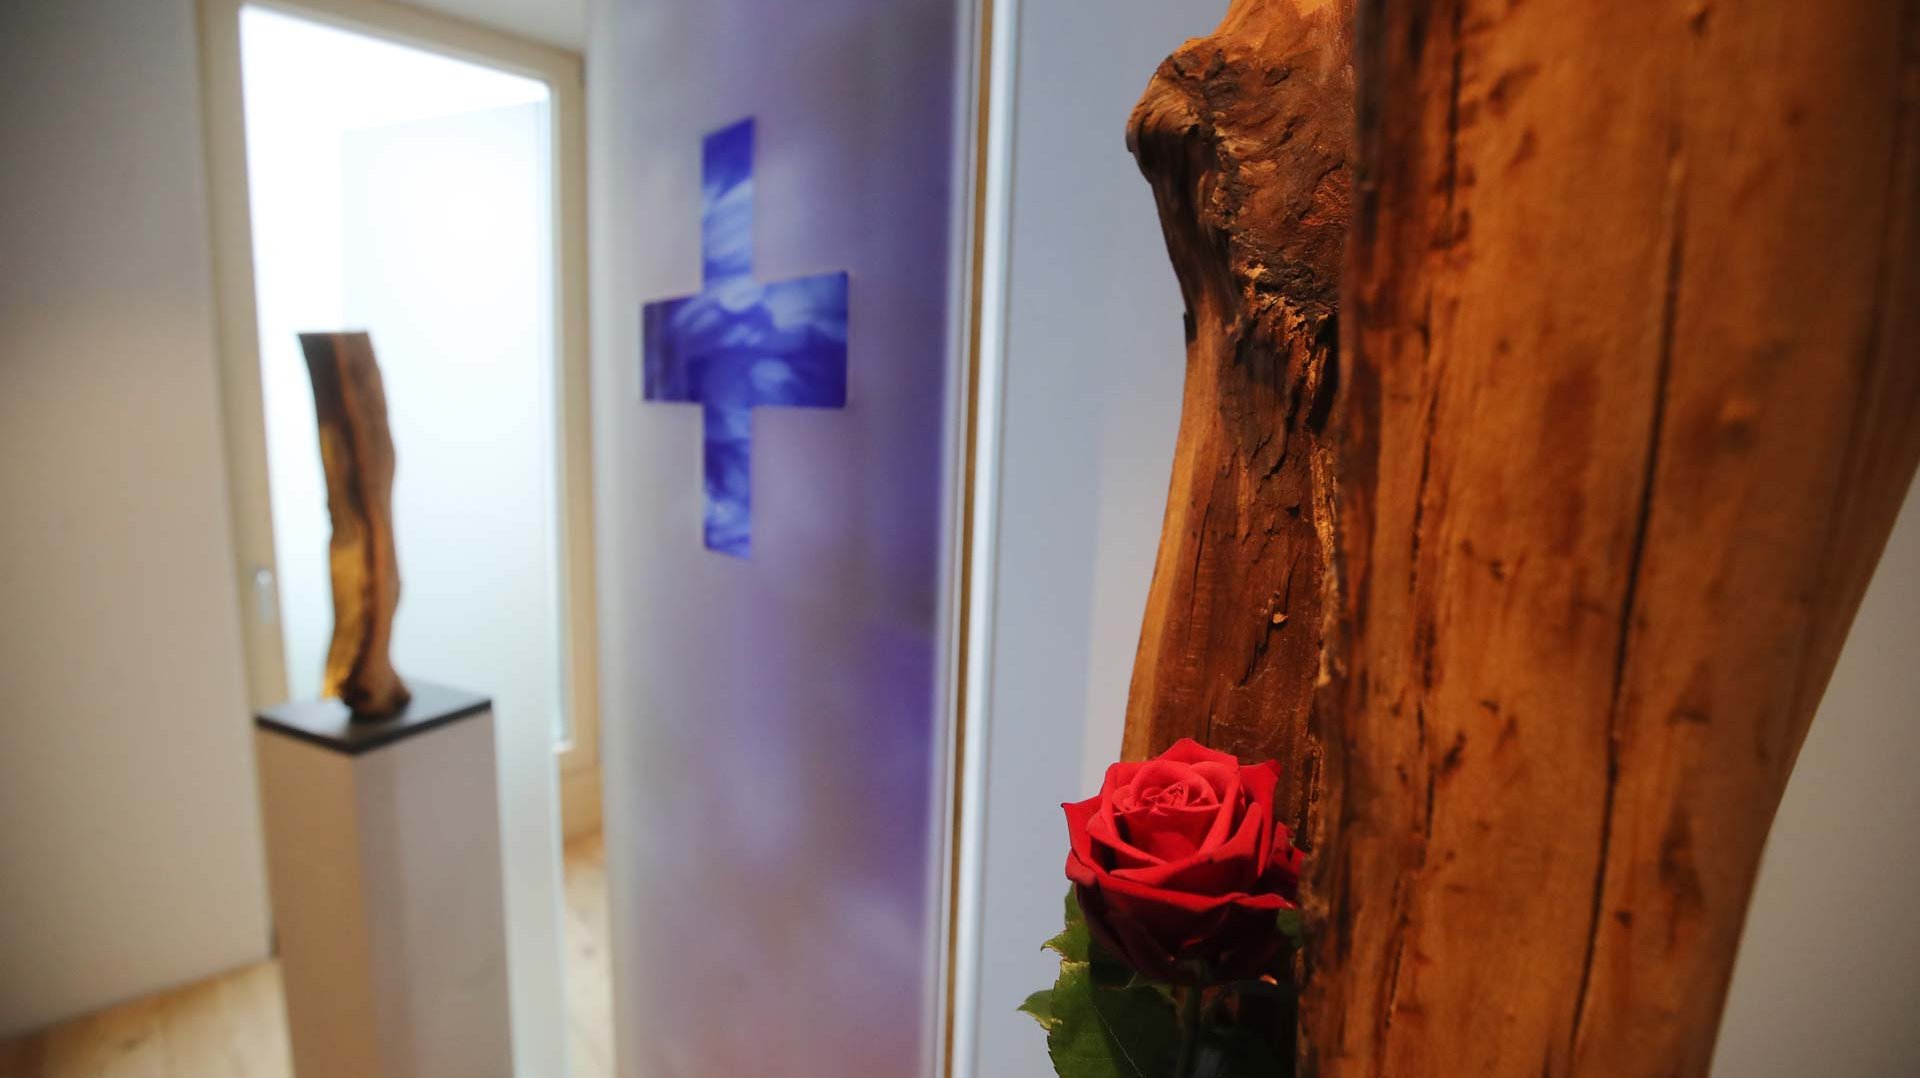 Skulpturen im Raum des Lebens - Rose, Licht der Hoffnung und Wunsch-Kreuz -  perspektivisch fotografiert